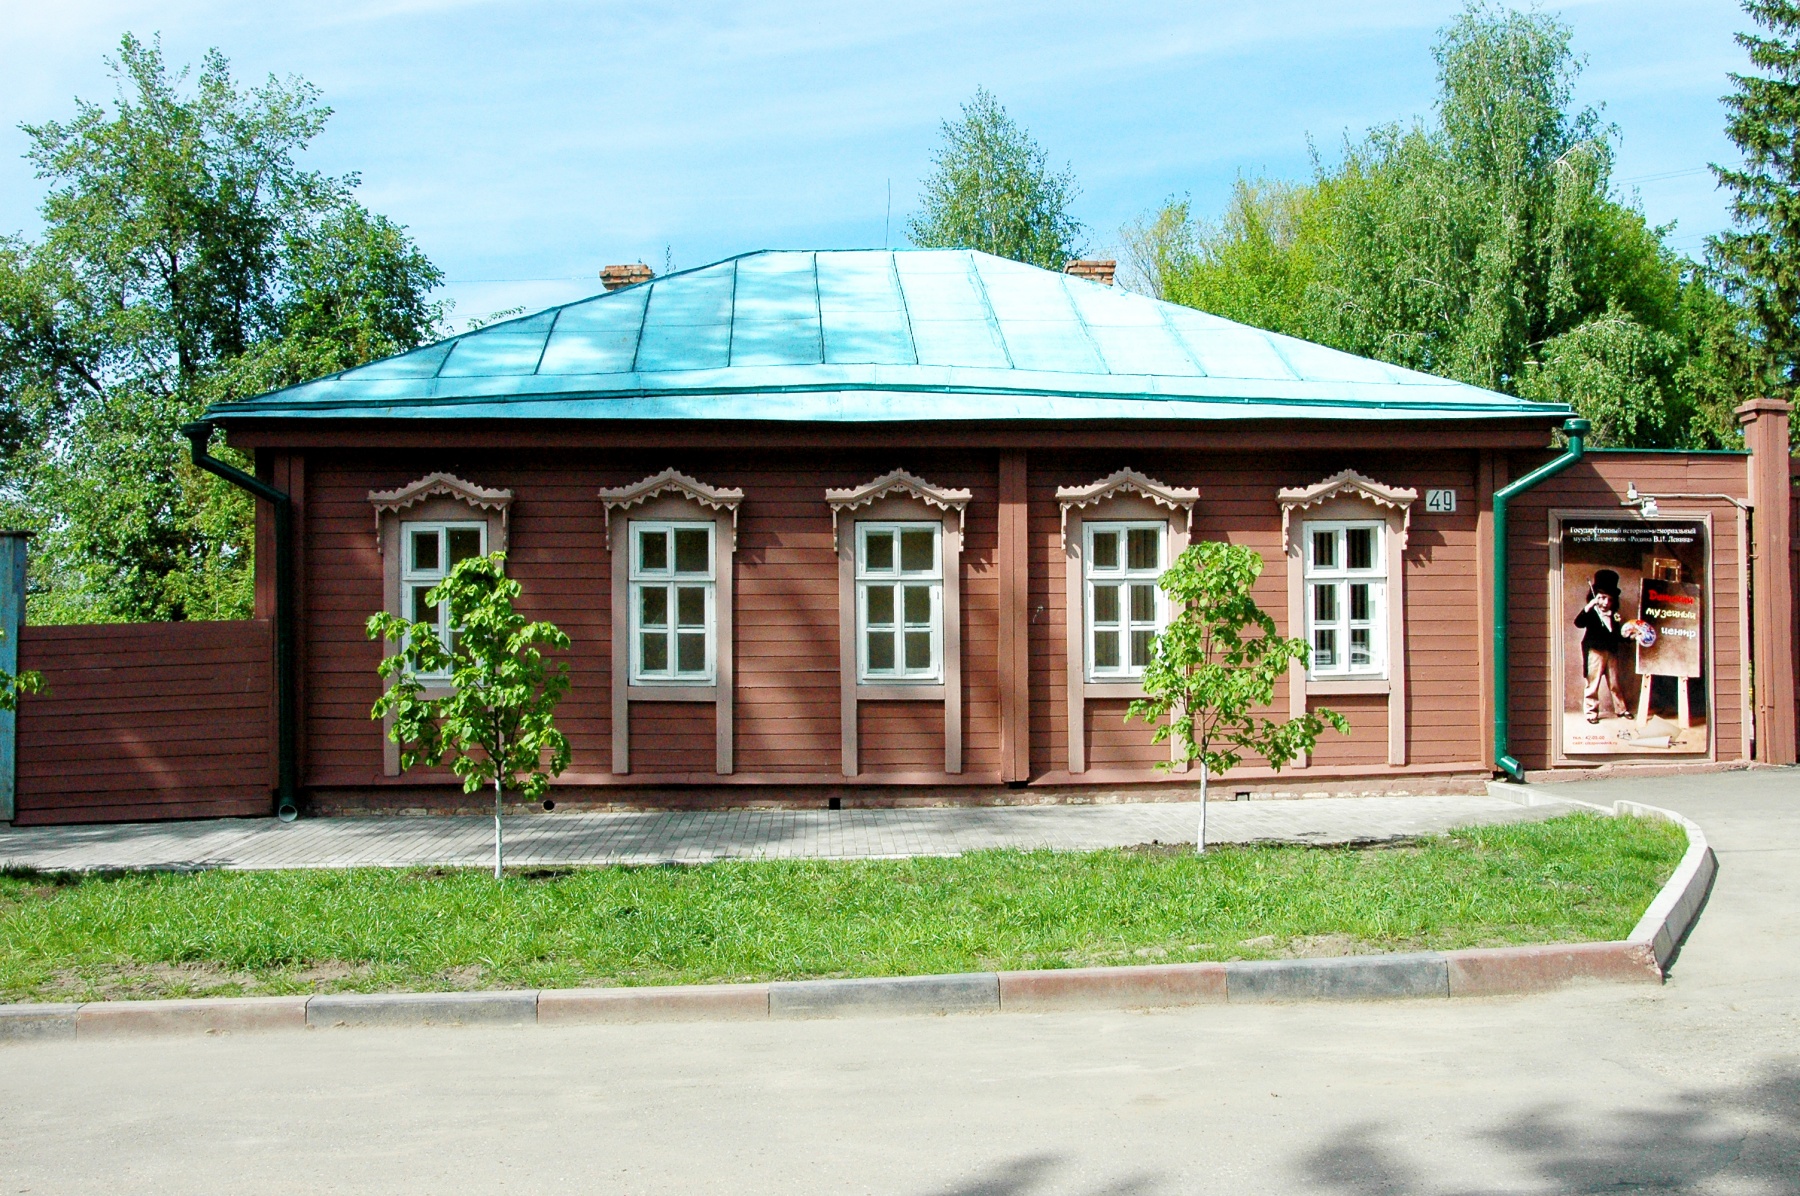 ульяновск дом музей ленина